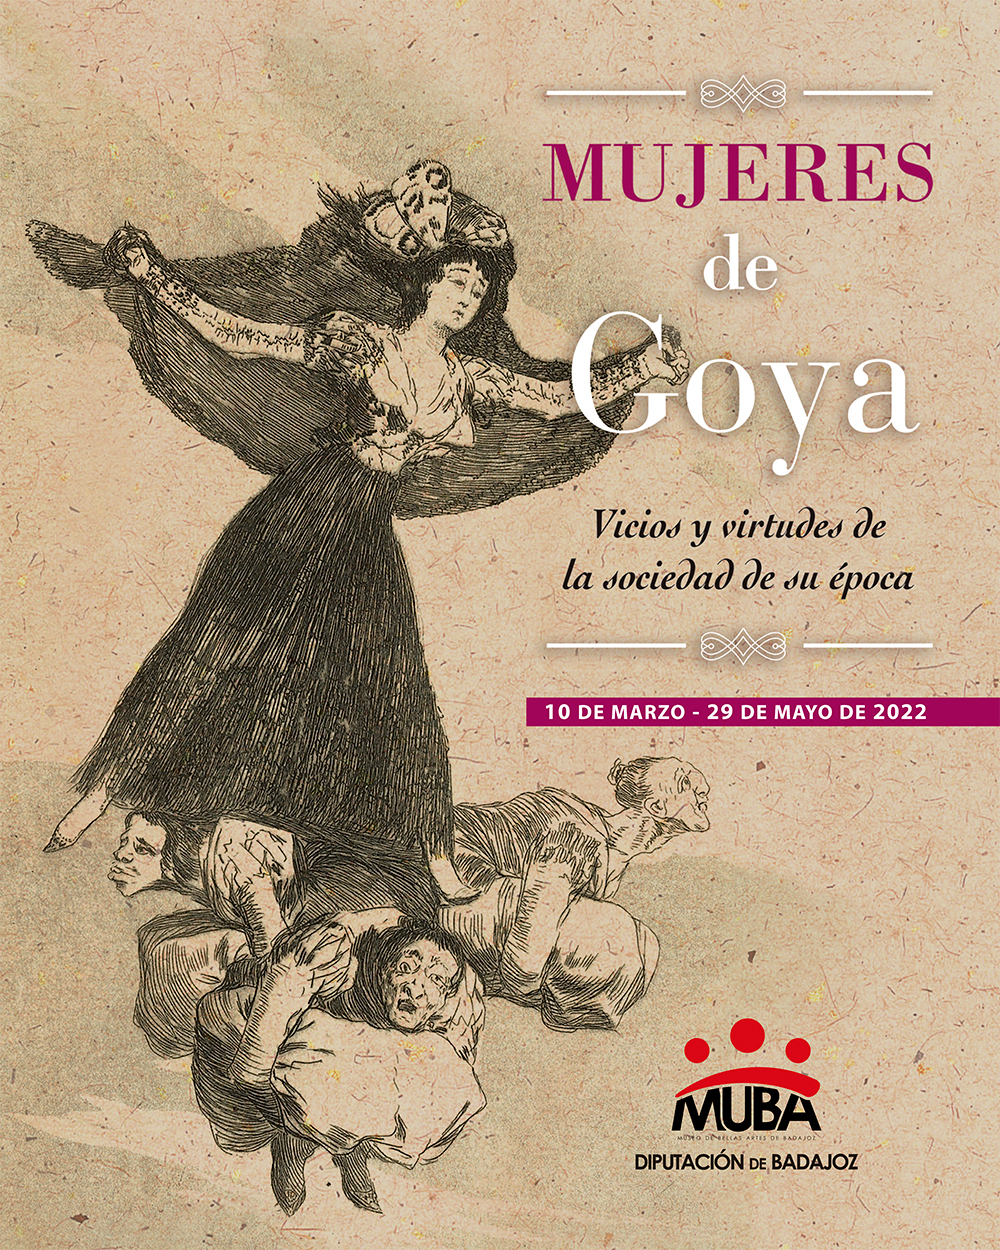 Mujeres de Goya